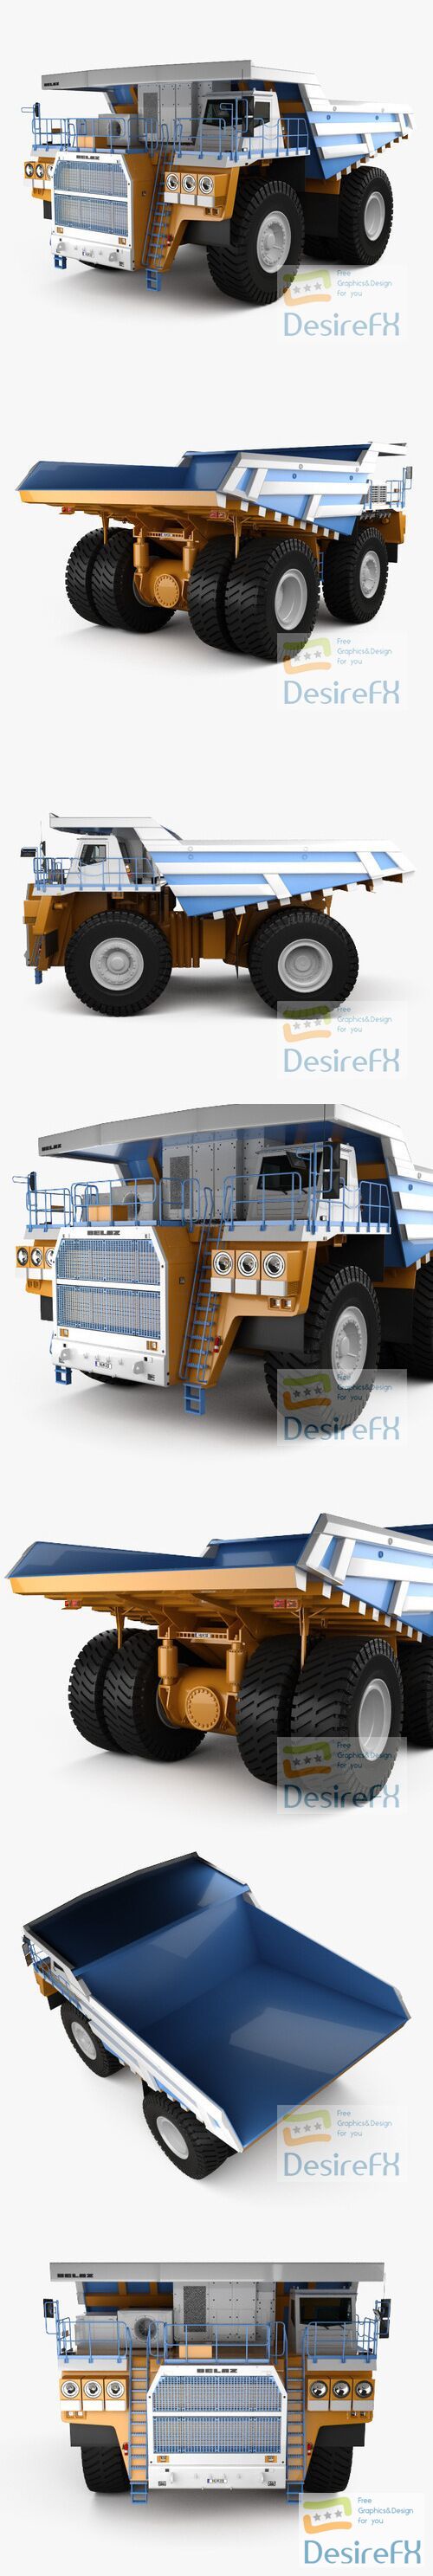 BelAZ 75603 Dump Truck 2012 3D Model